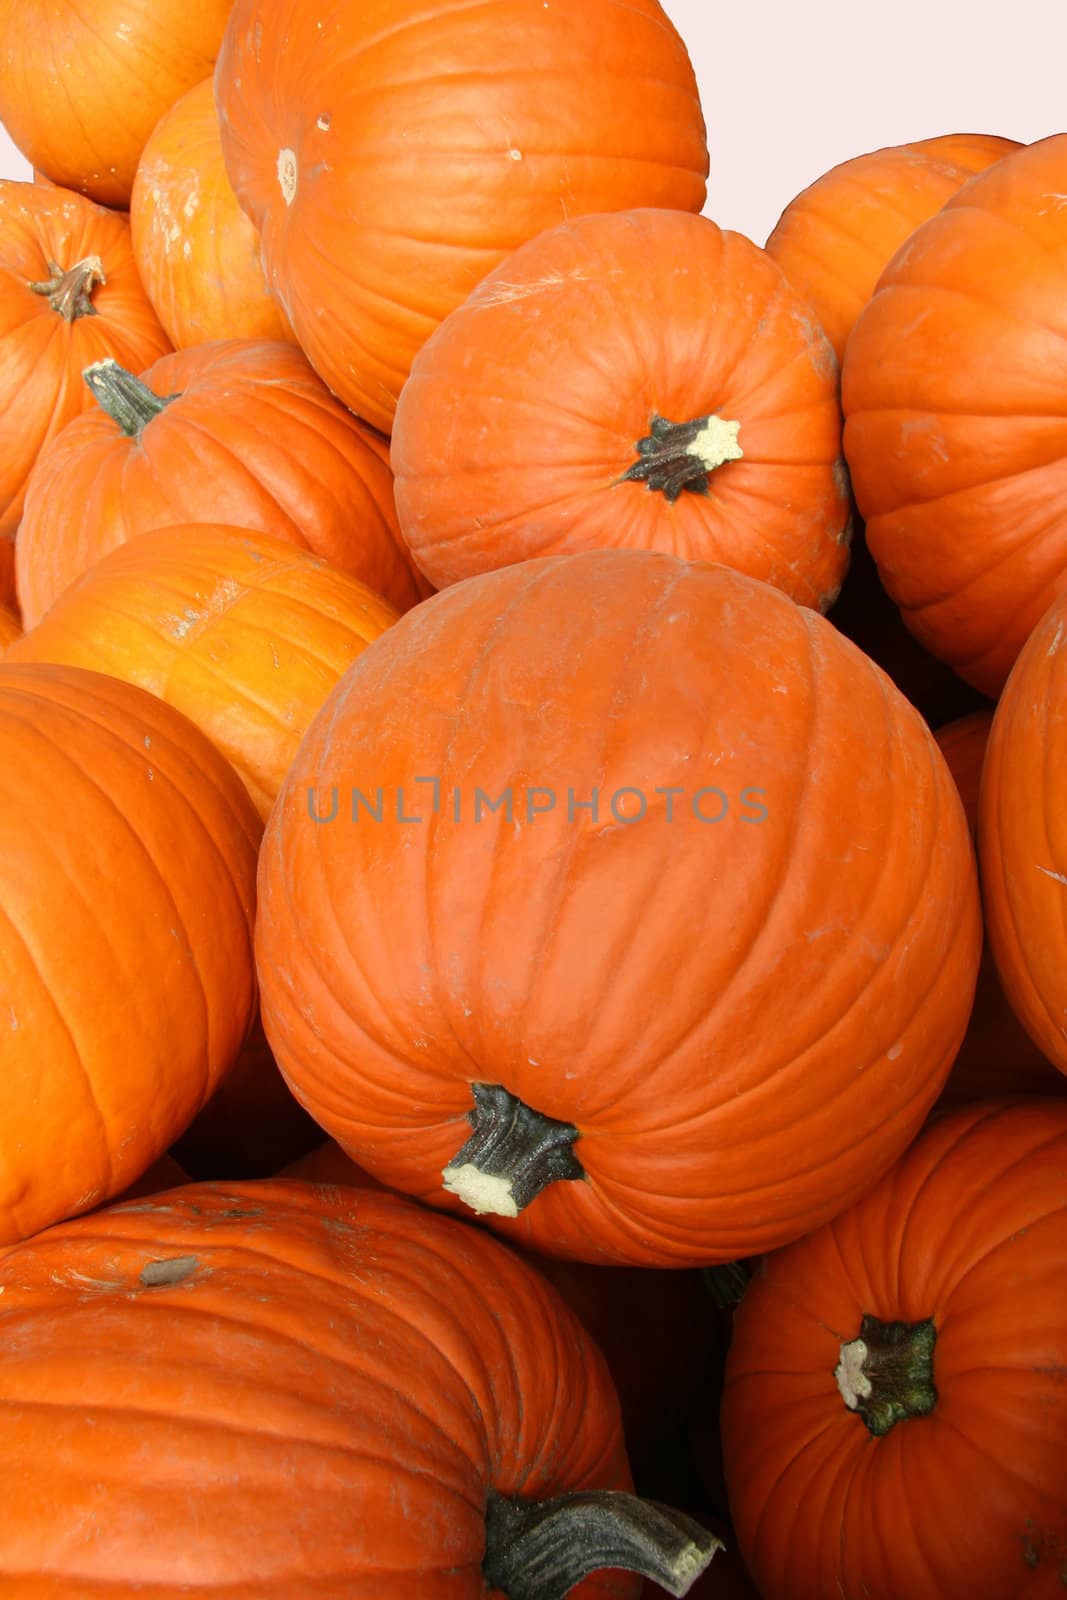 Pumpkins by Imagecom